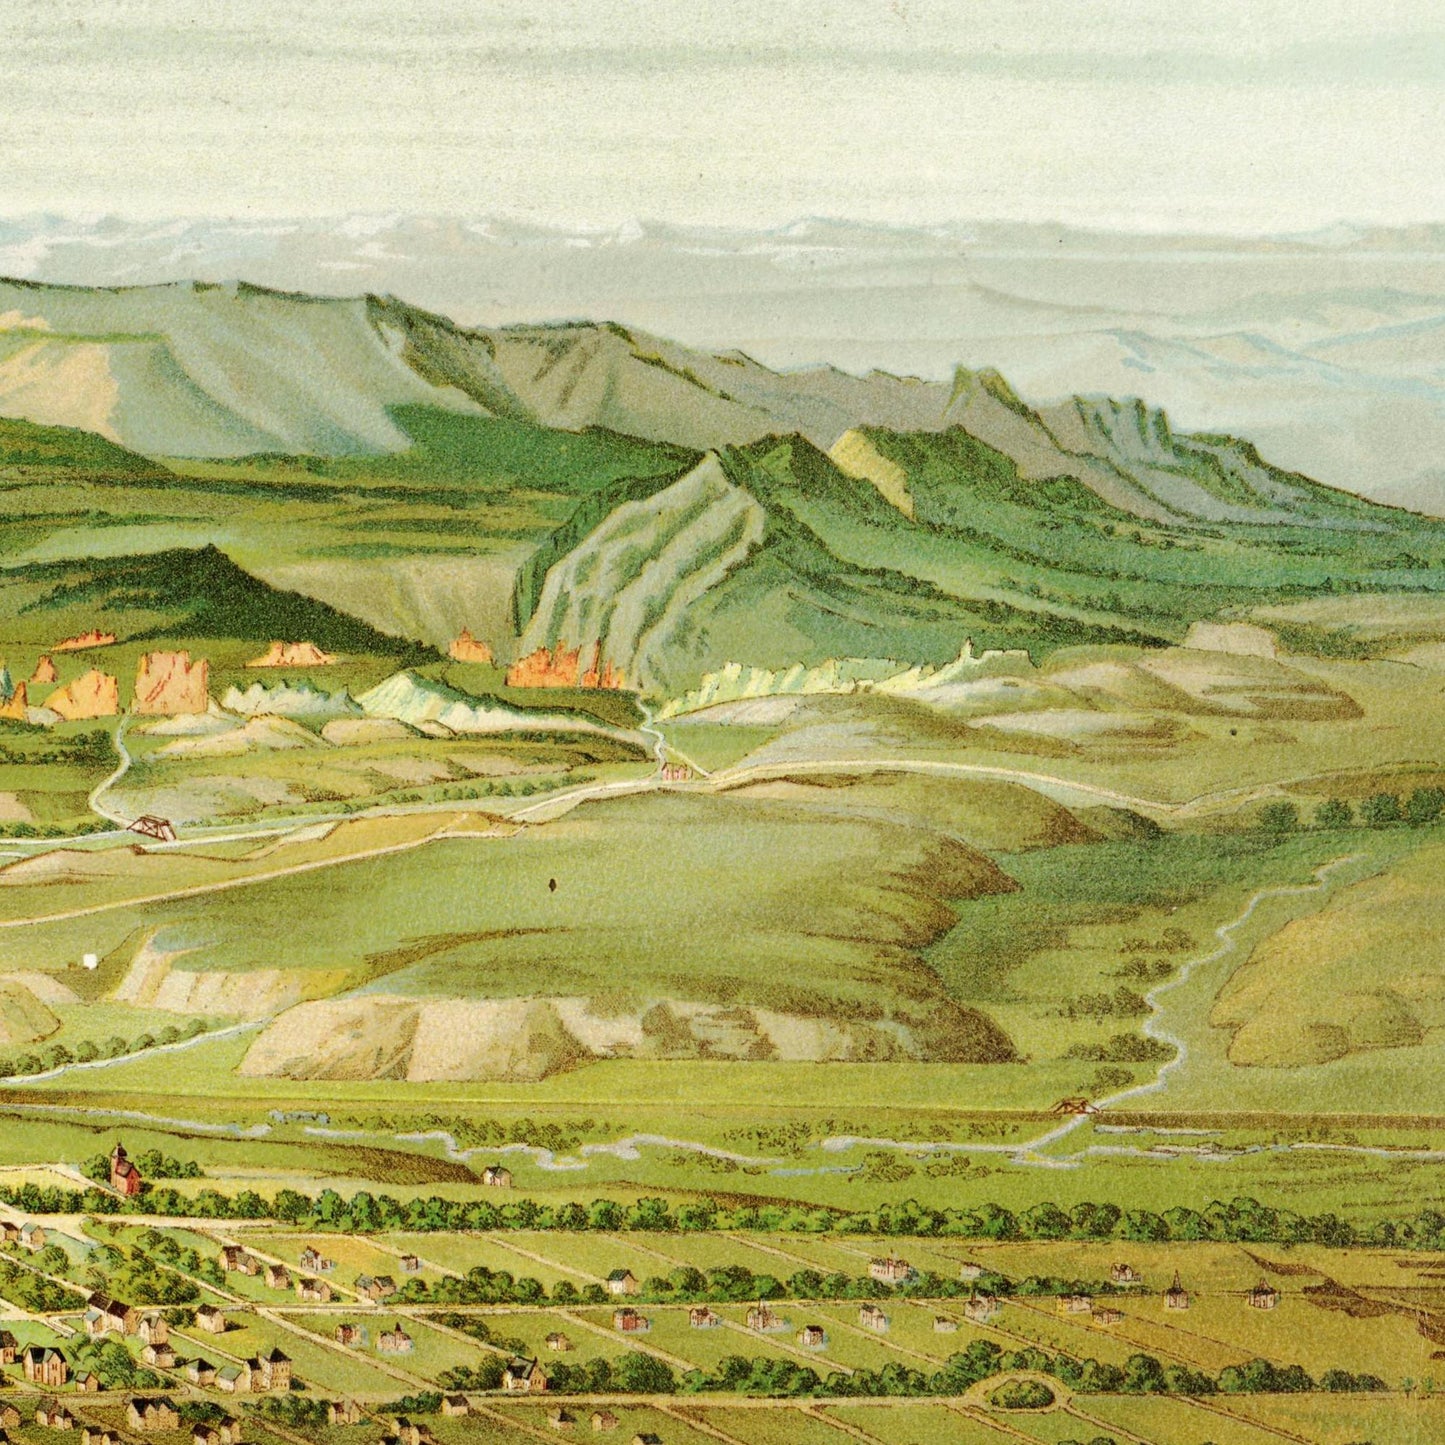 Historische Stadtansicht Colorado Springs um 1890